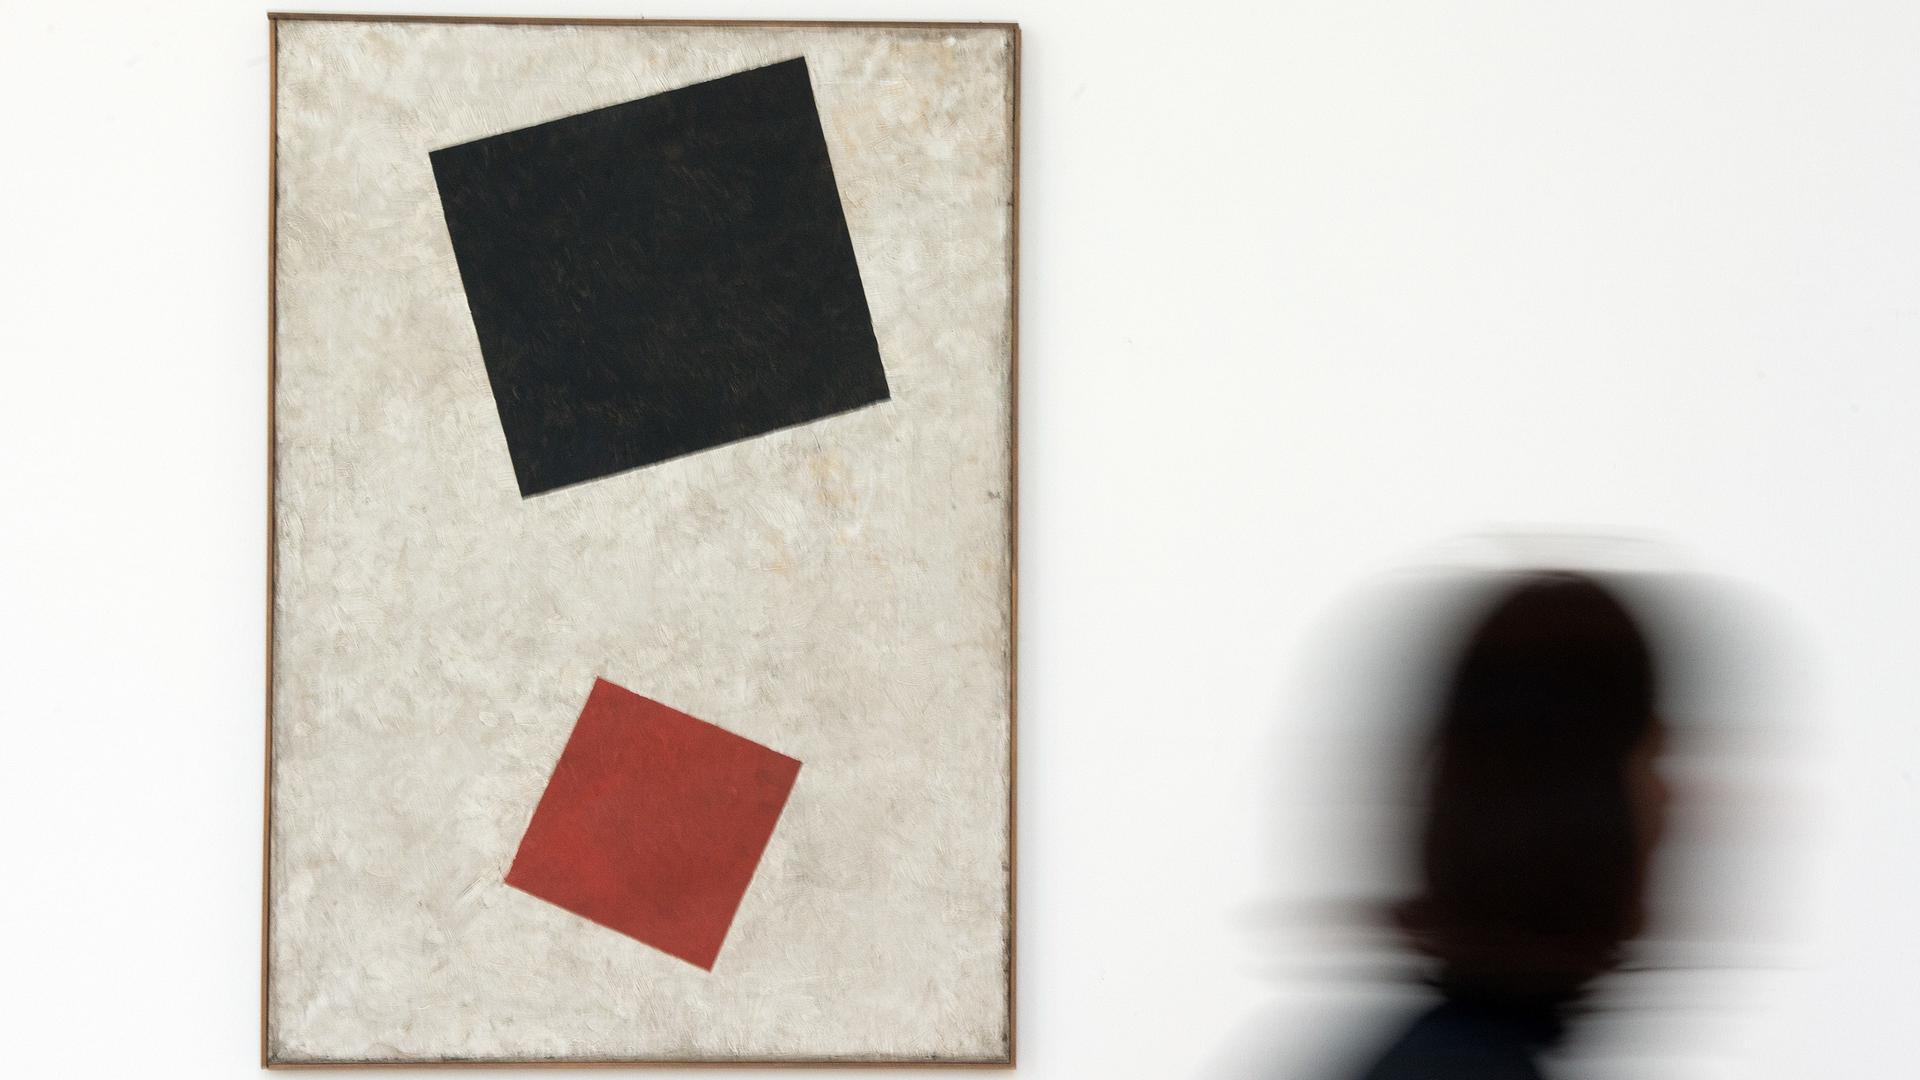 «Schwarzes Rechteck und rotes Quadrat» von Kasimir Malewitsch aus dem Jahr 1915 ist in der Kunstsammlung Nordrhein-Westfalen zu sehen.